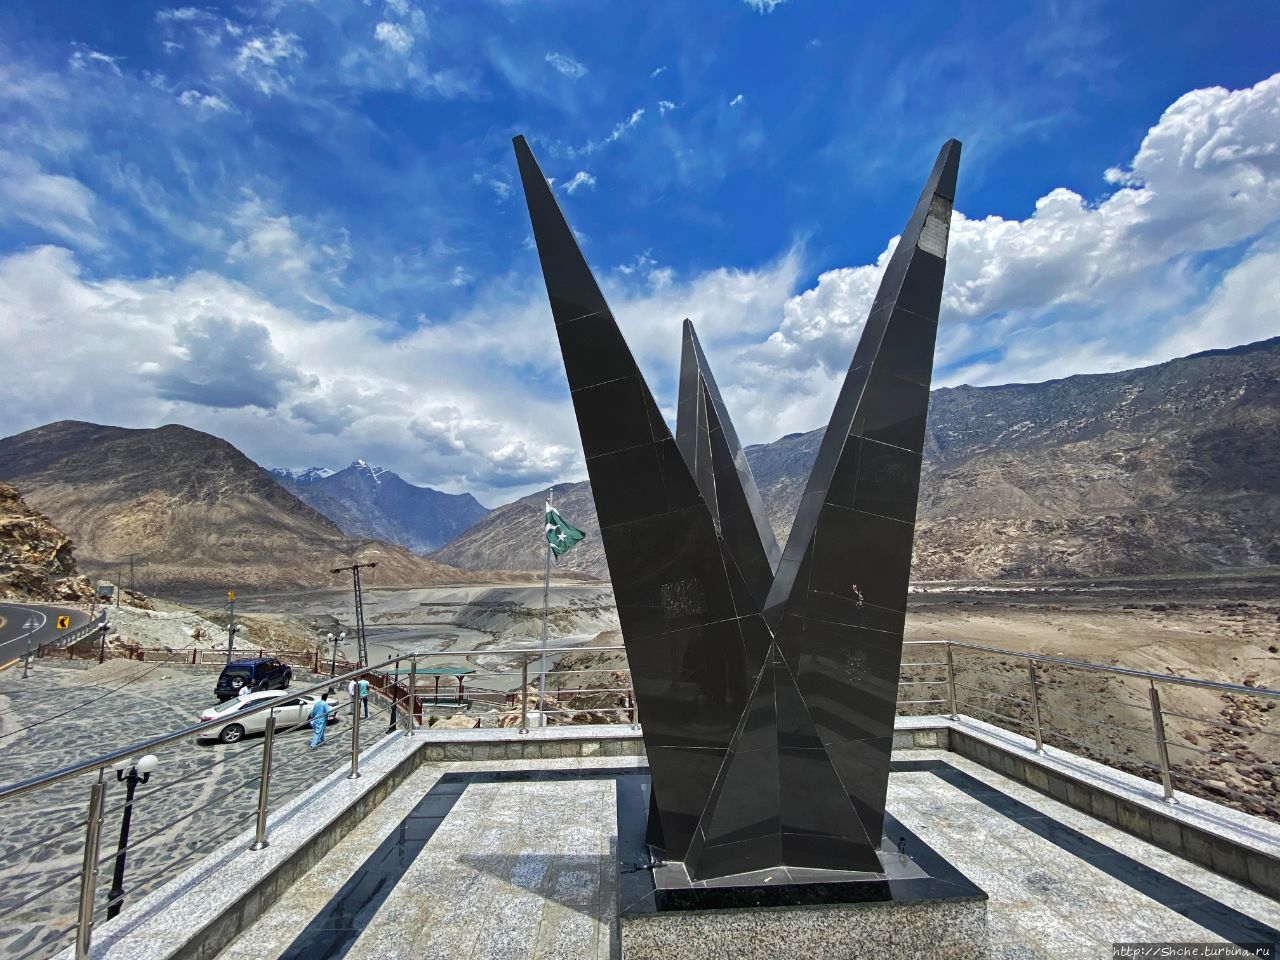 Перекресток трех горных хребтов Джаглот, Пакистан